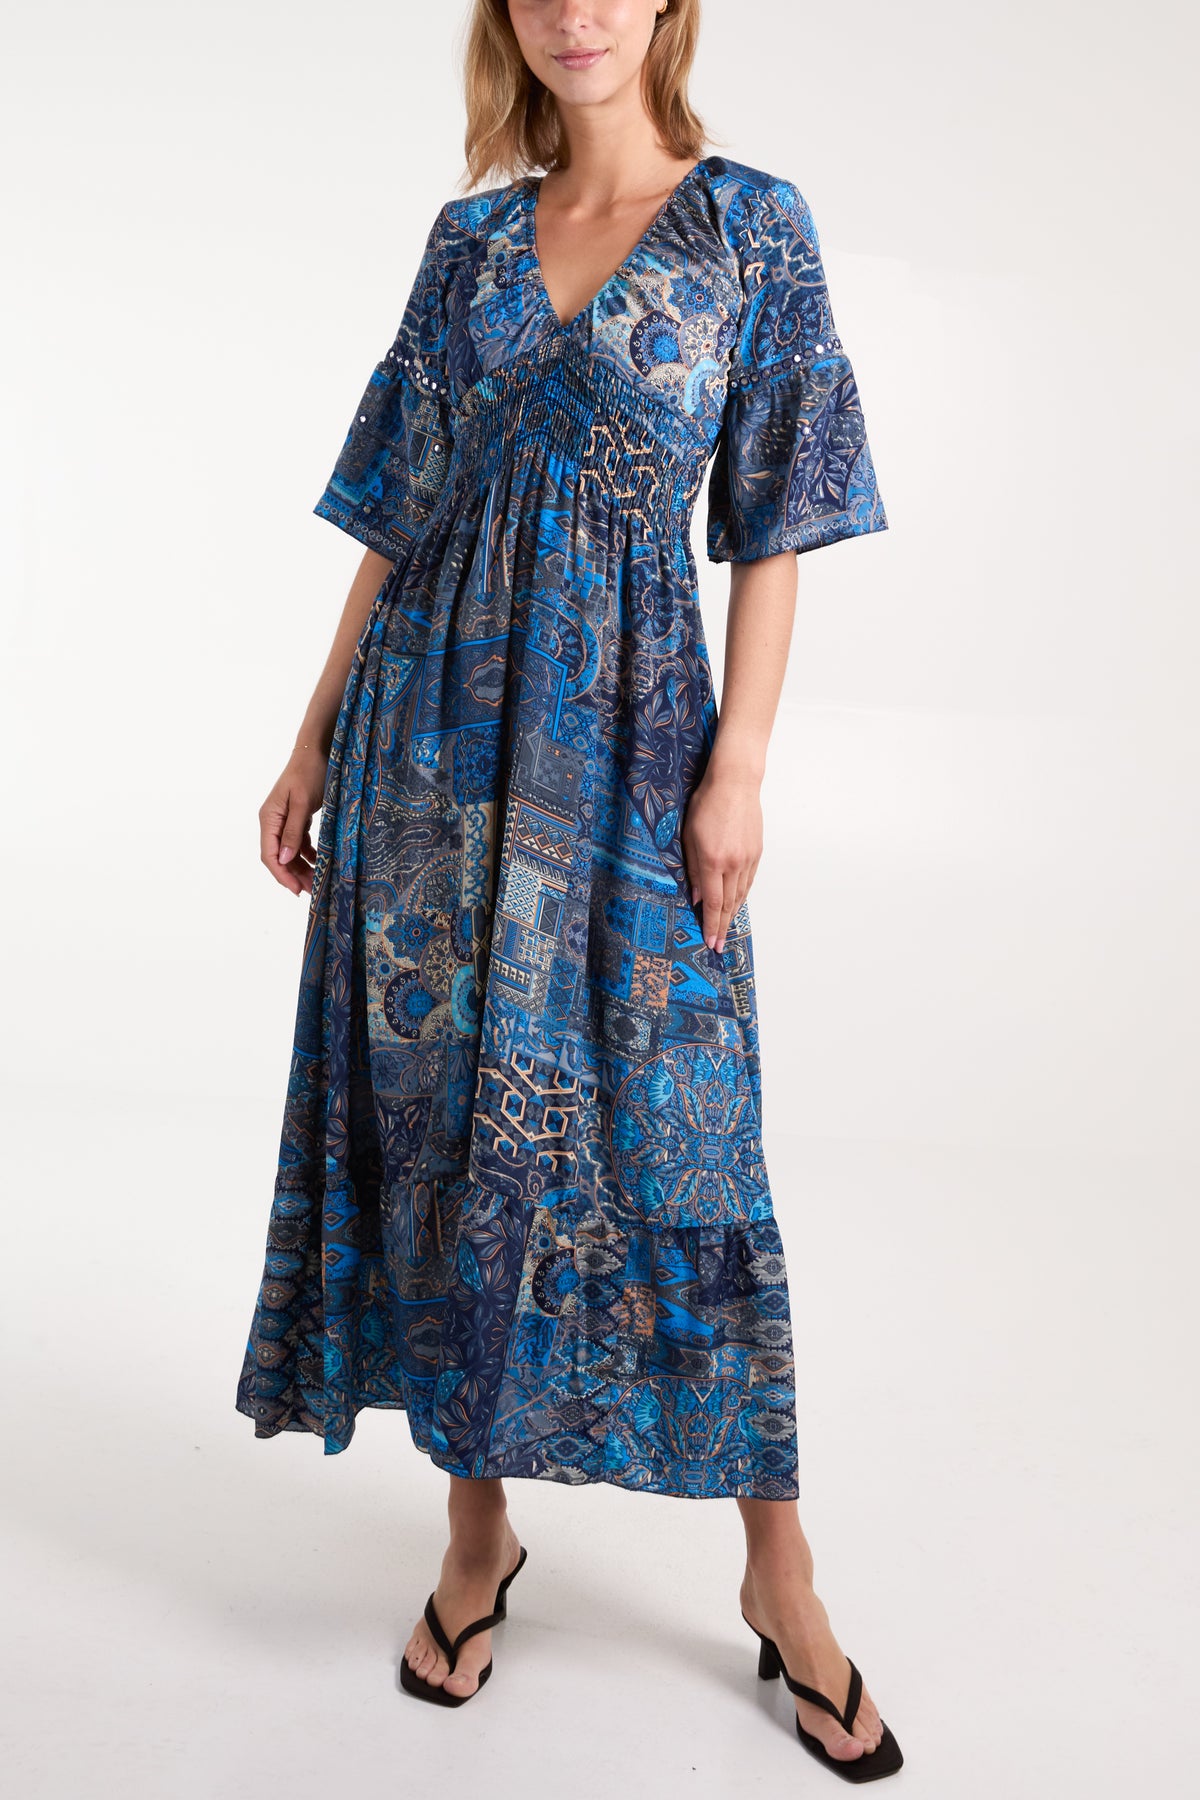 Multi Print Embellished Art Silk Maxi Dress